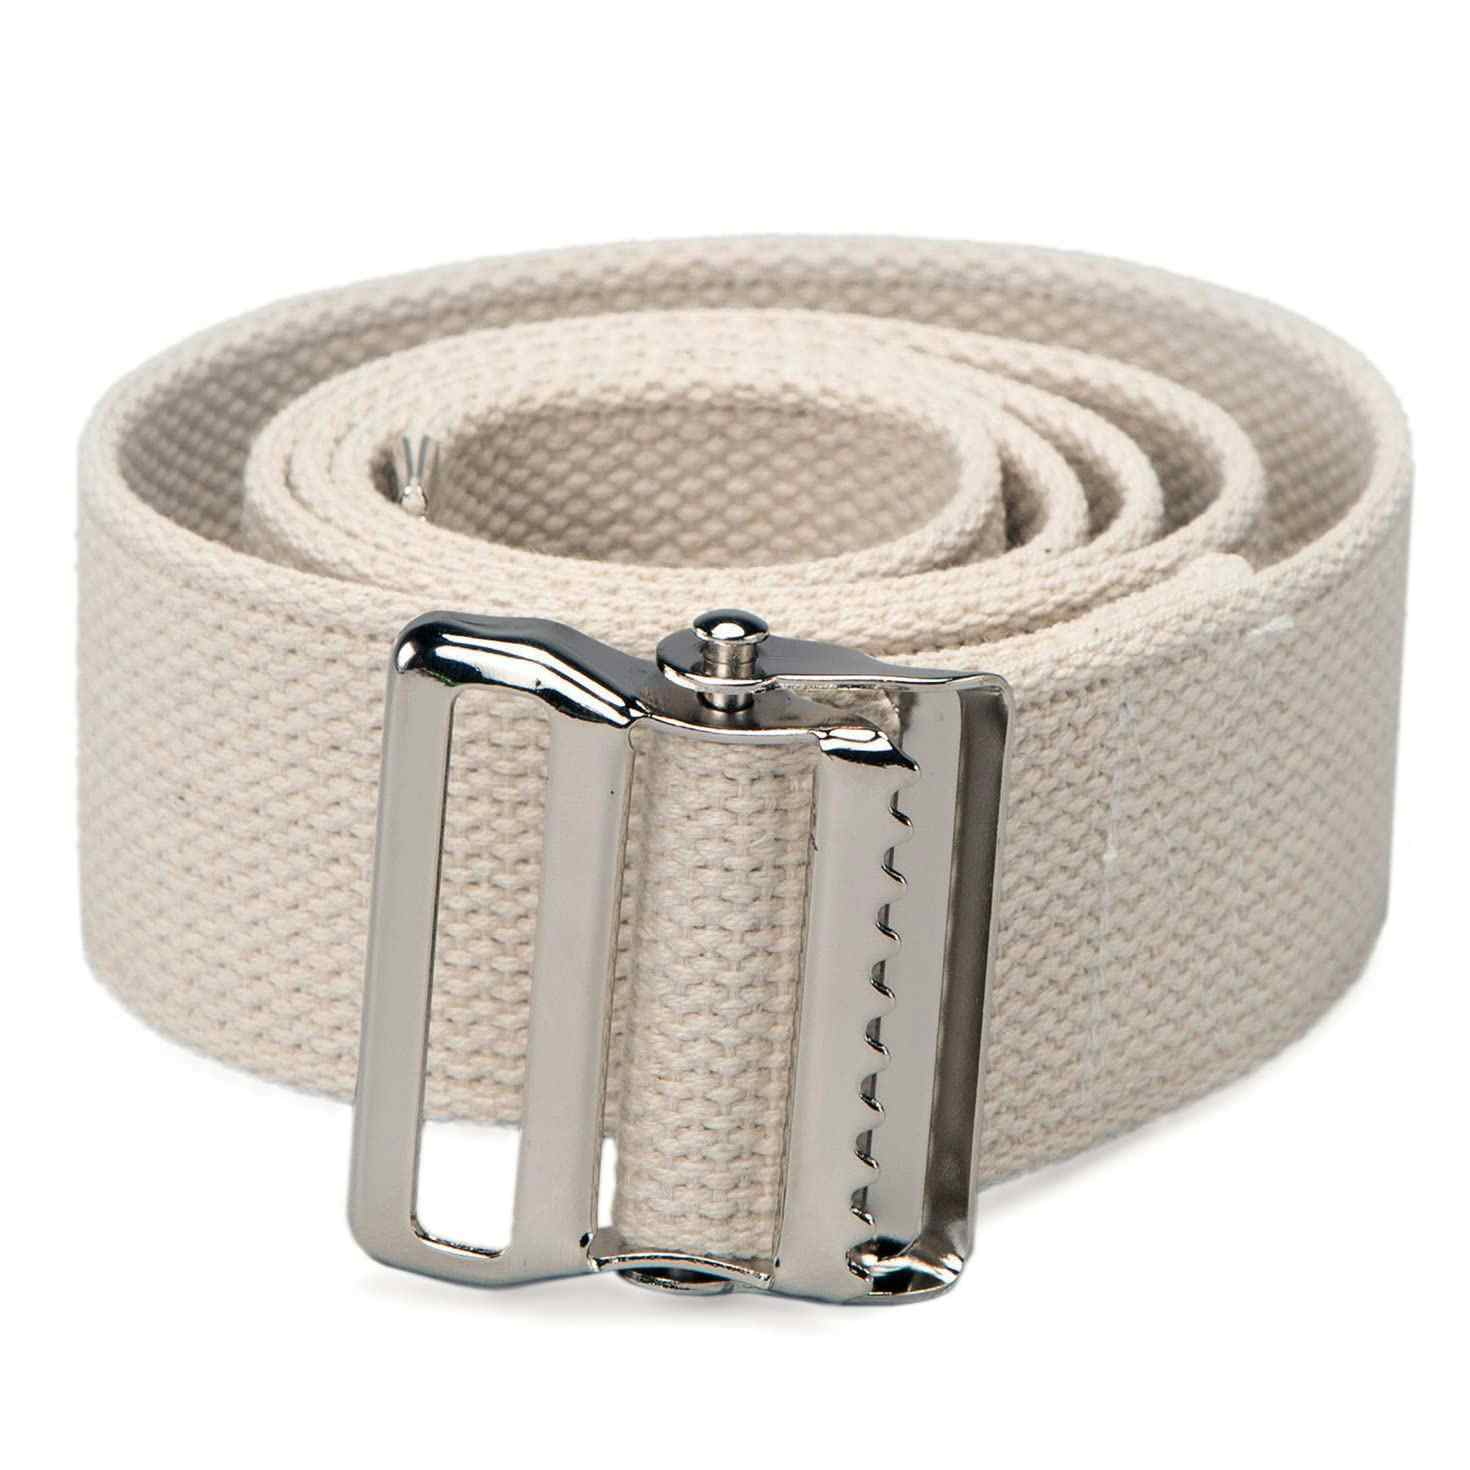 Posey Cotton Gait Belt, Multiple Size/Colors, 6524L, 70 Inch - White - 1 Each